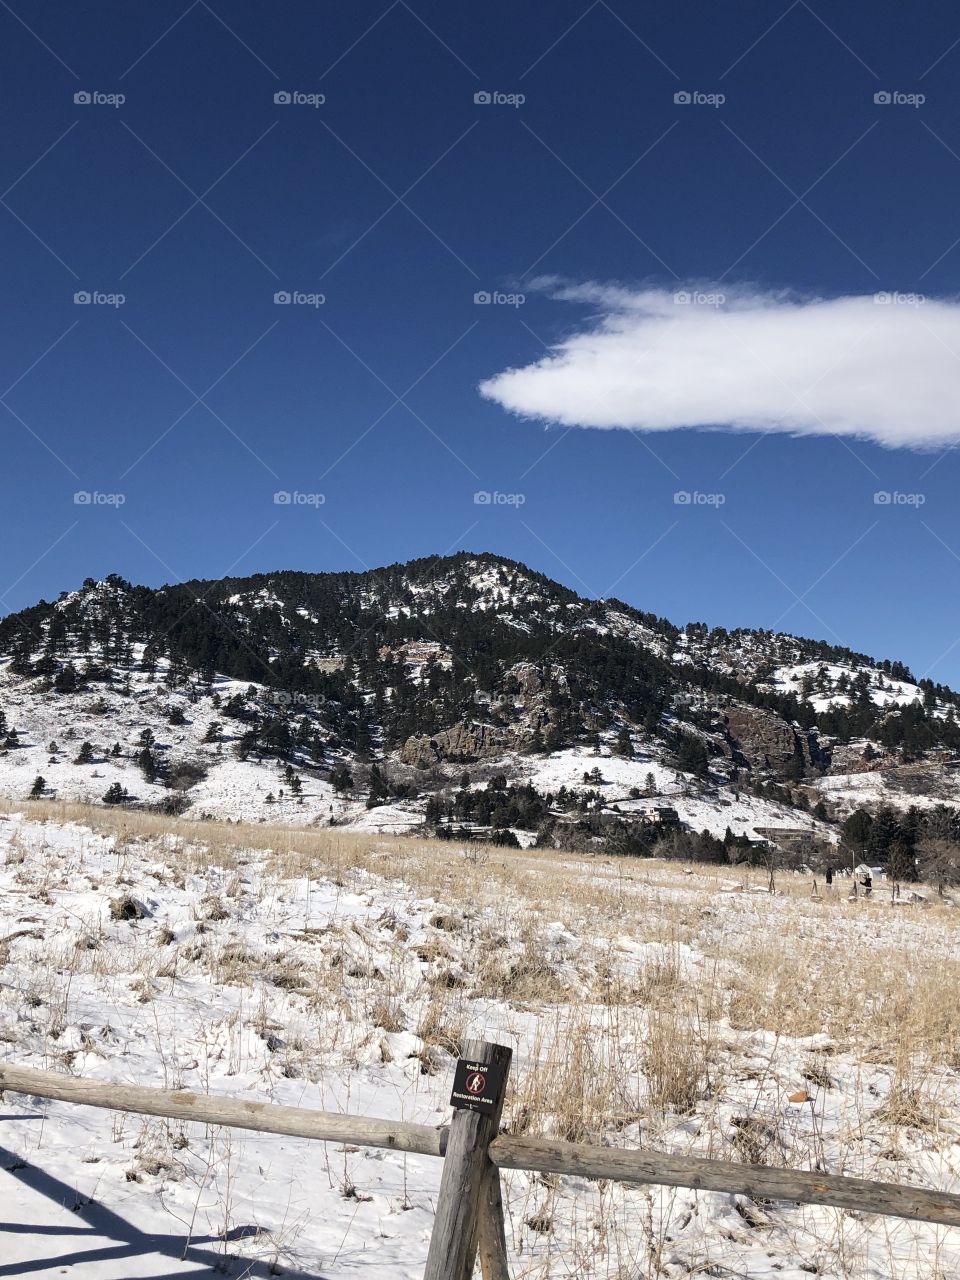 Colorado 